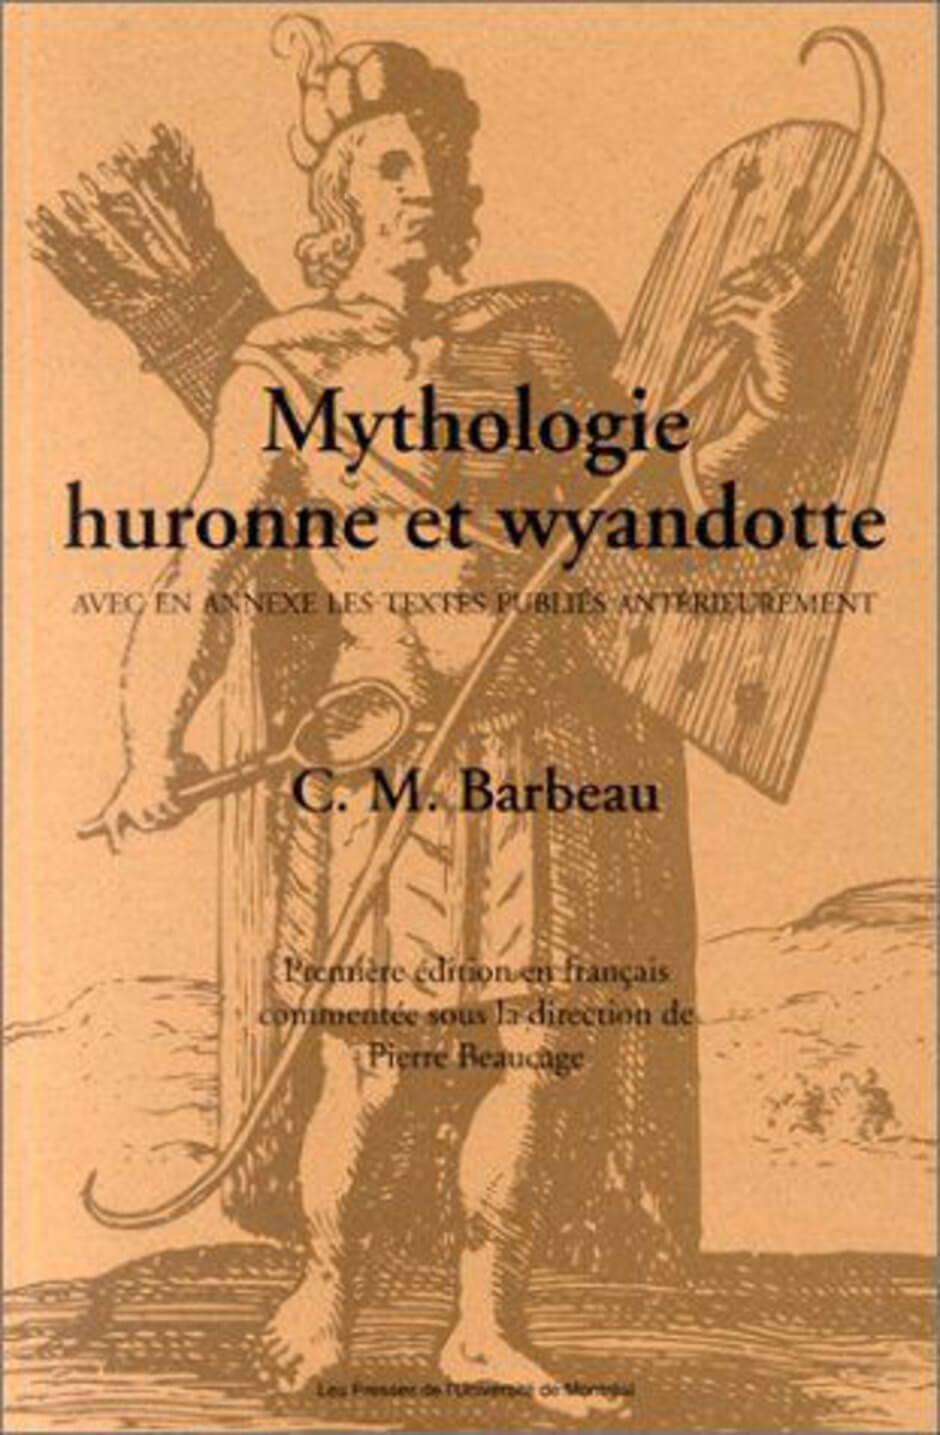 Art Canada Institute, Zacharie Vincent, Mythologie huronne et wyandotte (1994) by Marius Barbeau